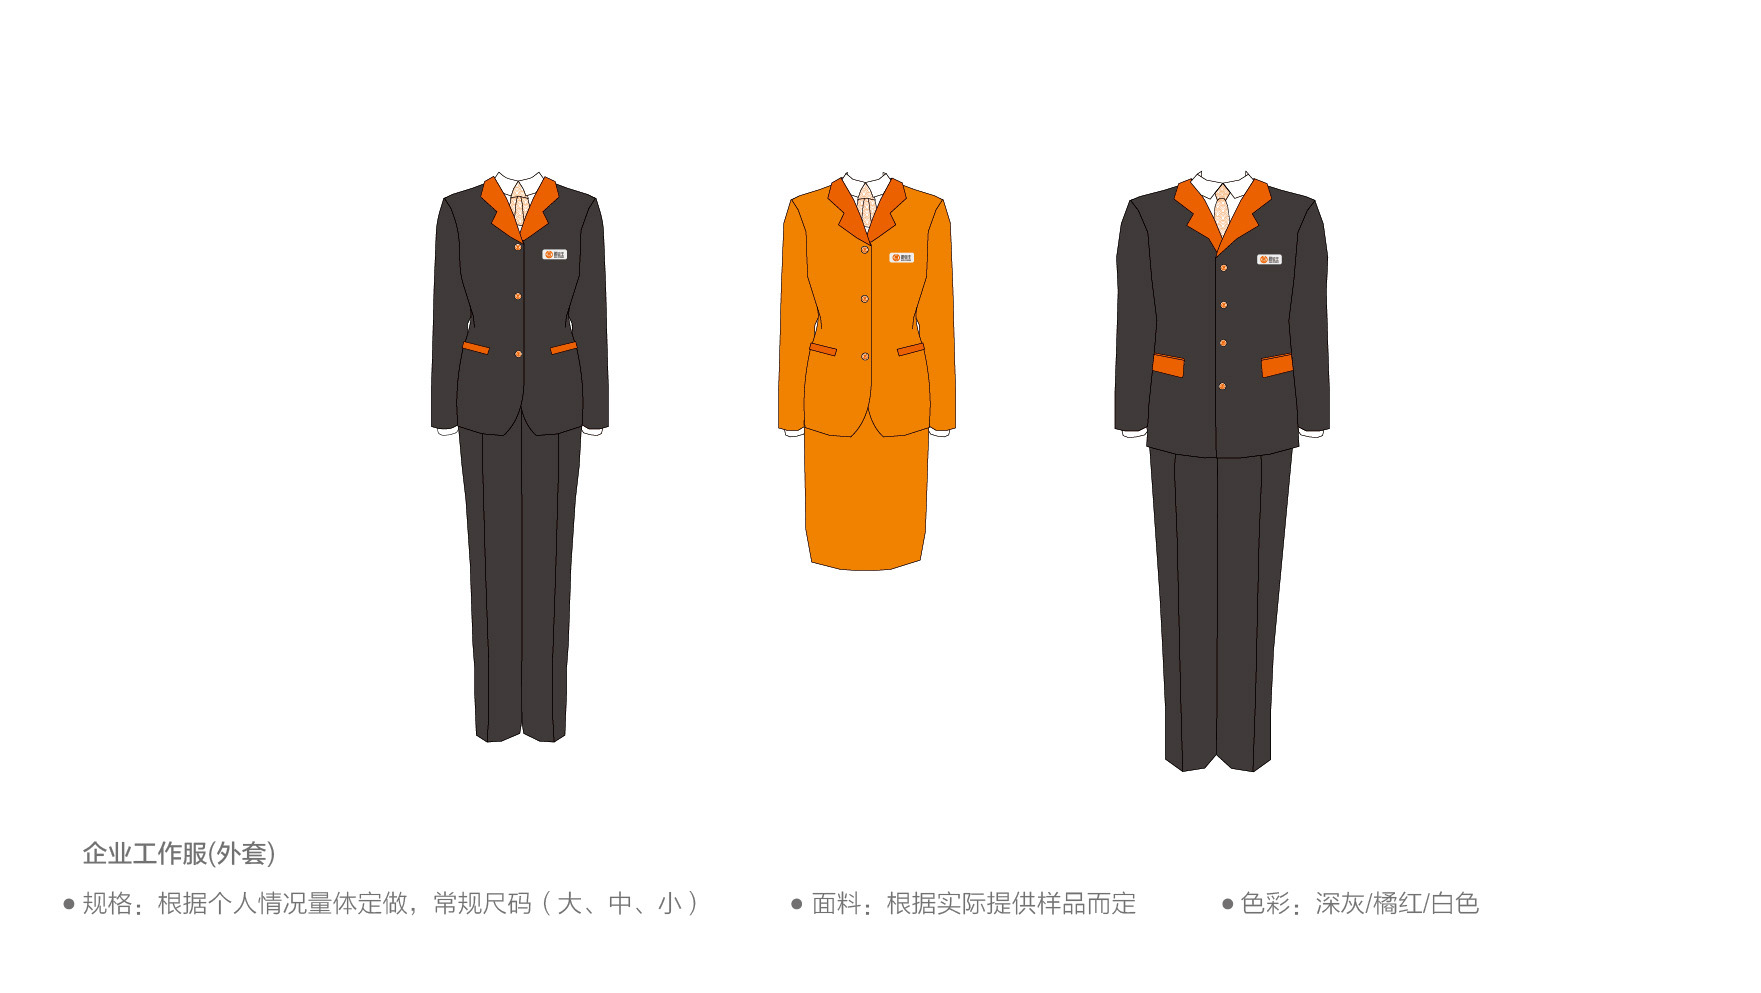 广州金融logo设计作品案例欣赏-黔金王品牌策划